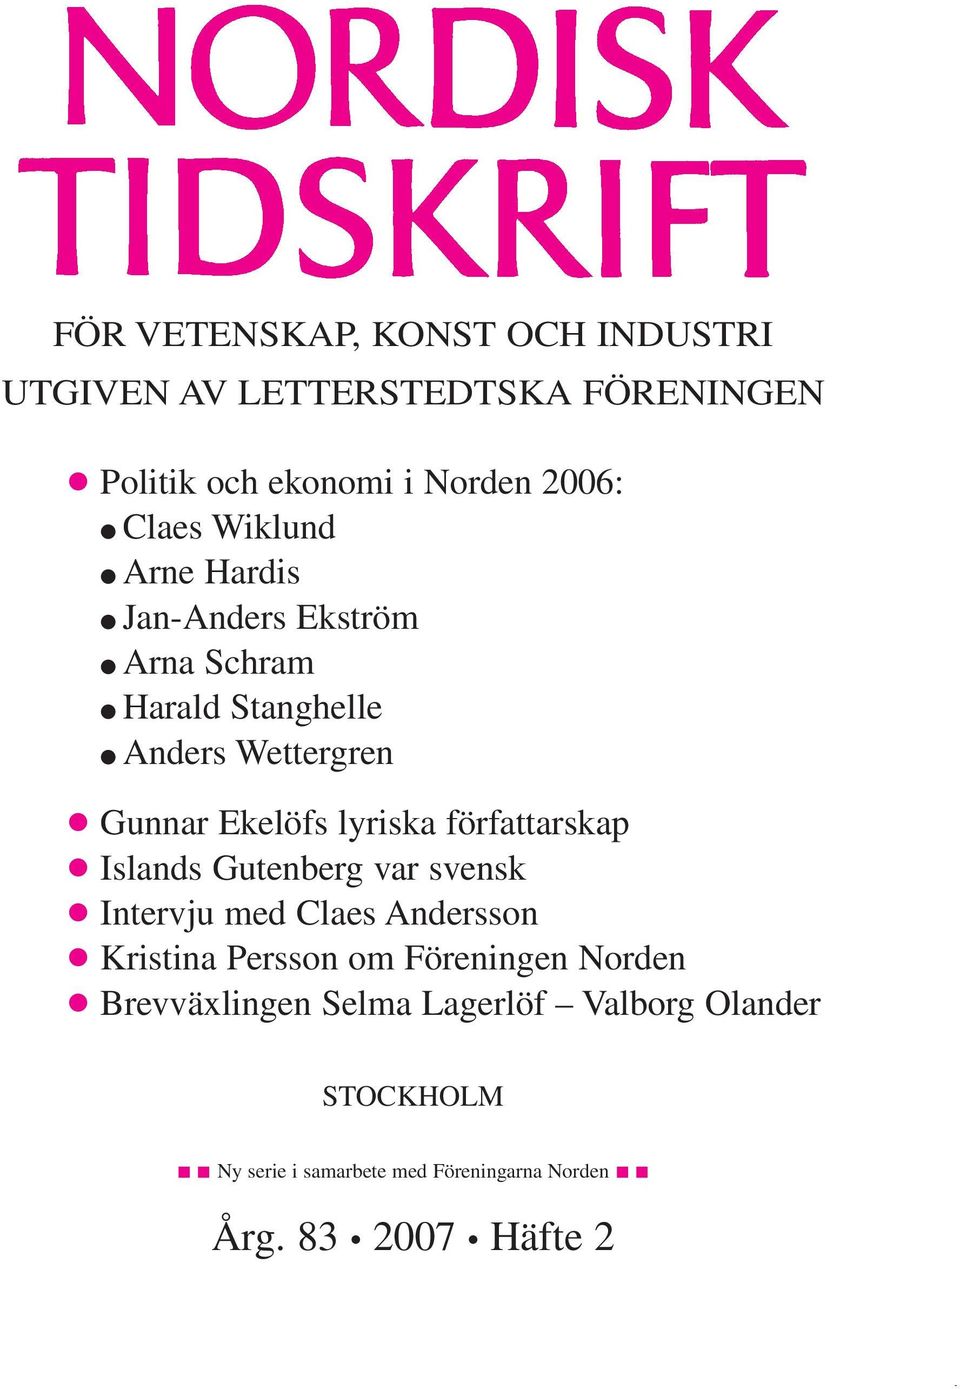 författarskap c Islands Gutenberg var svensk c Intervju med Claes Andersson c Kristina Persson om Föreningen Norden c